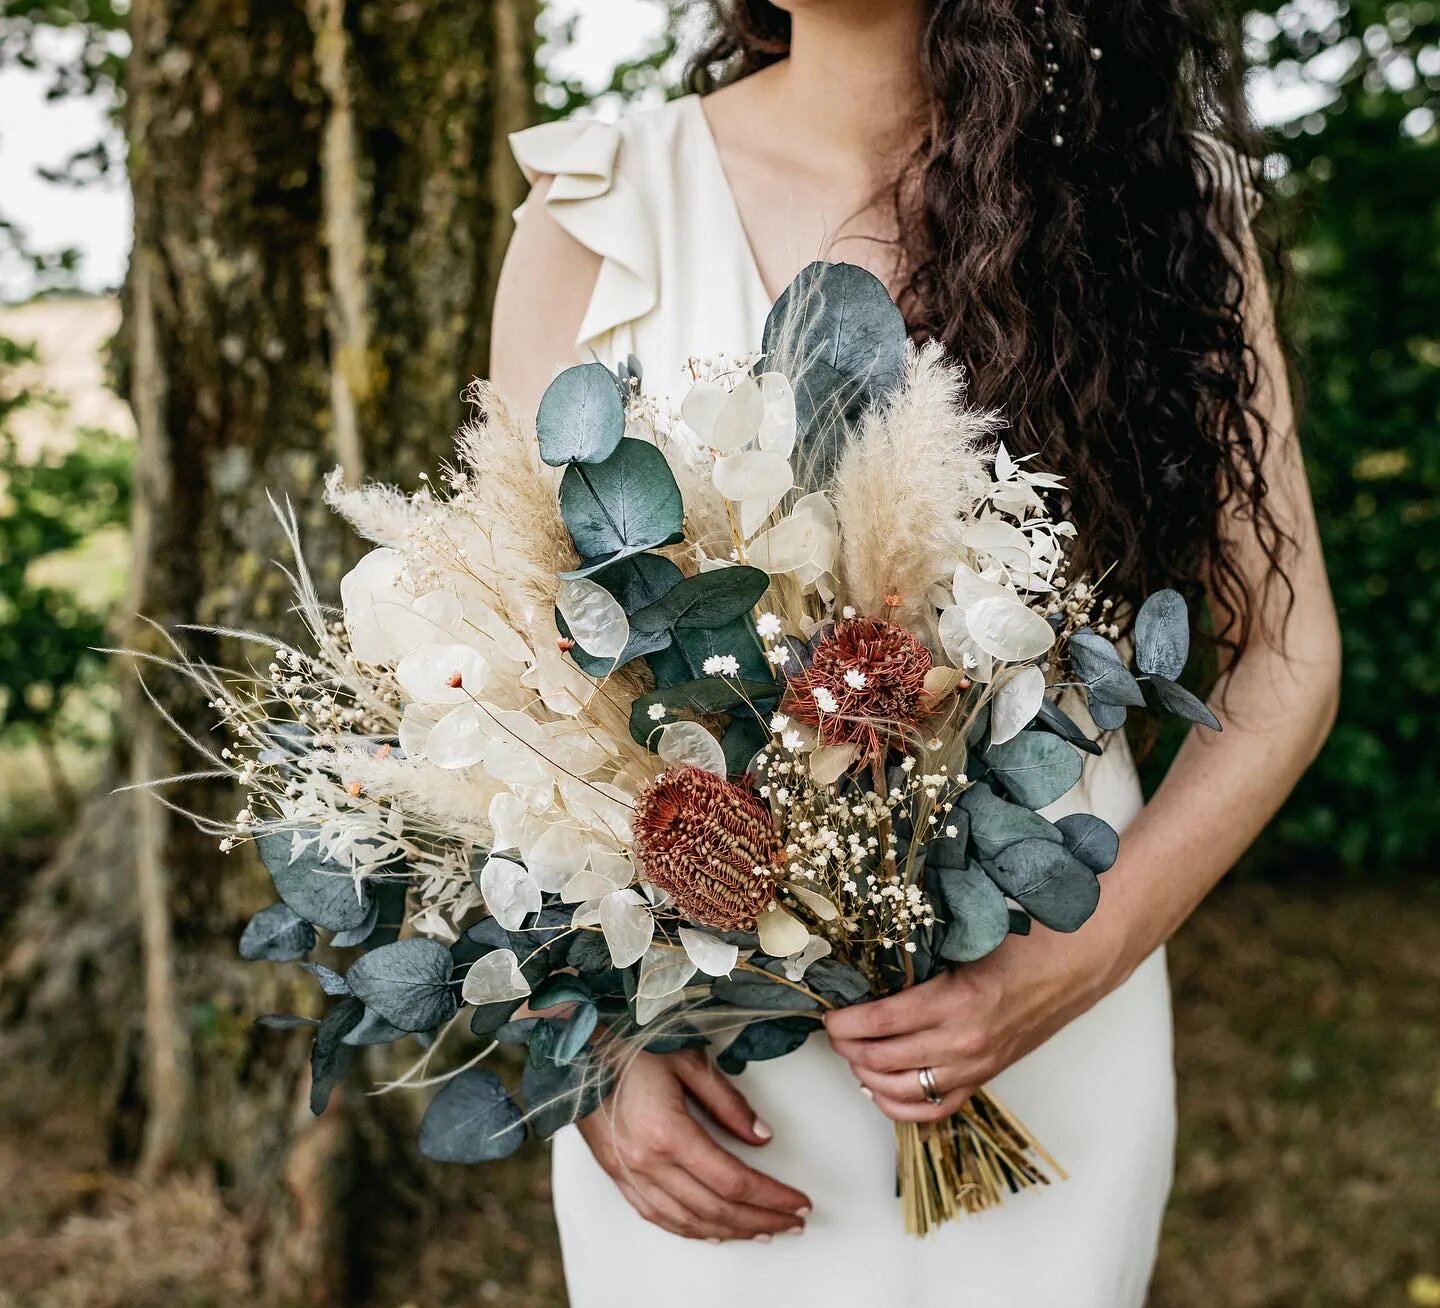 Wedding bouquet containing eucalyptus